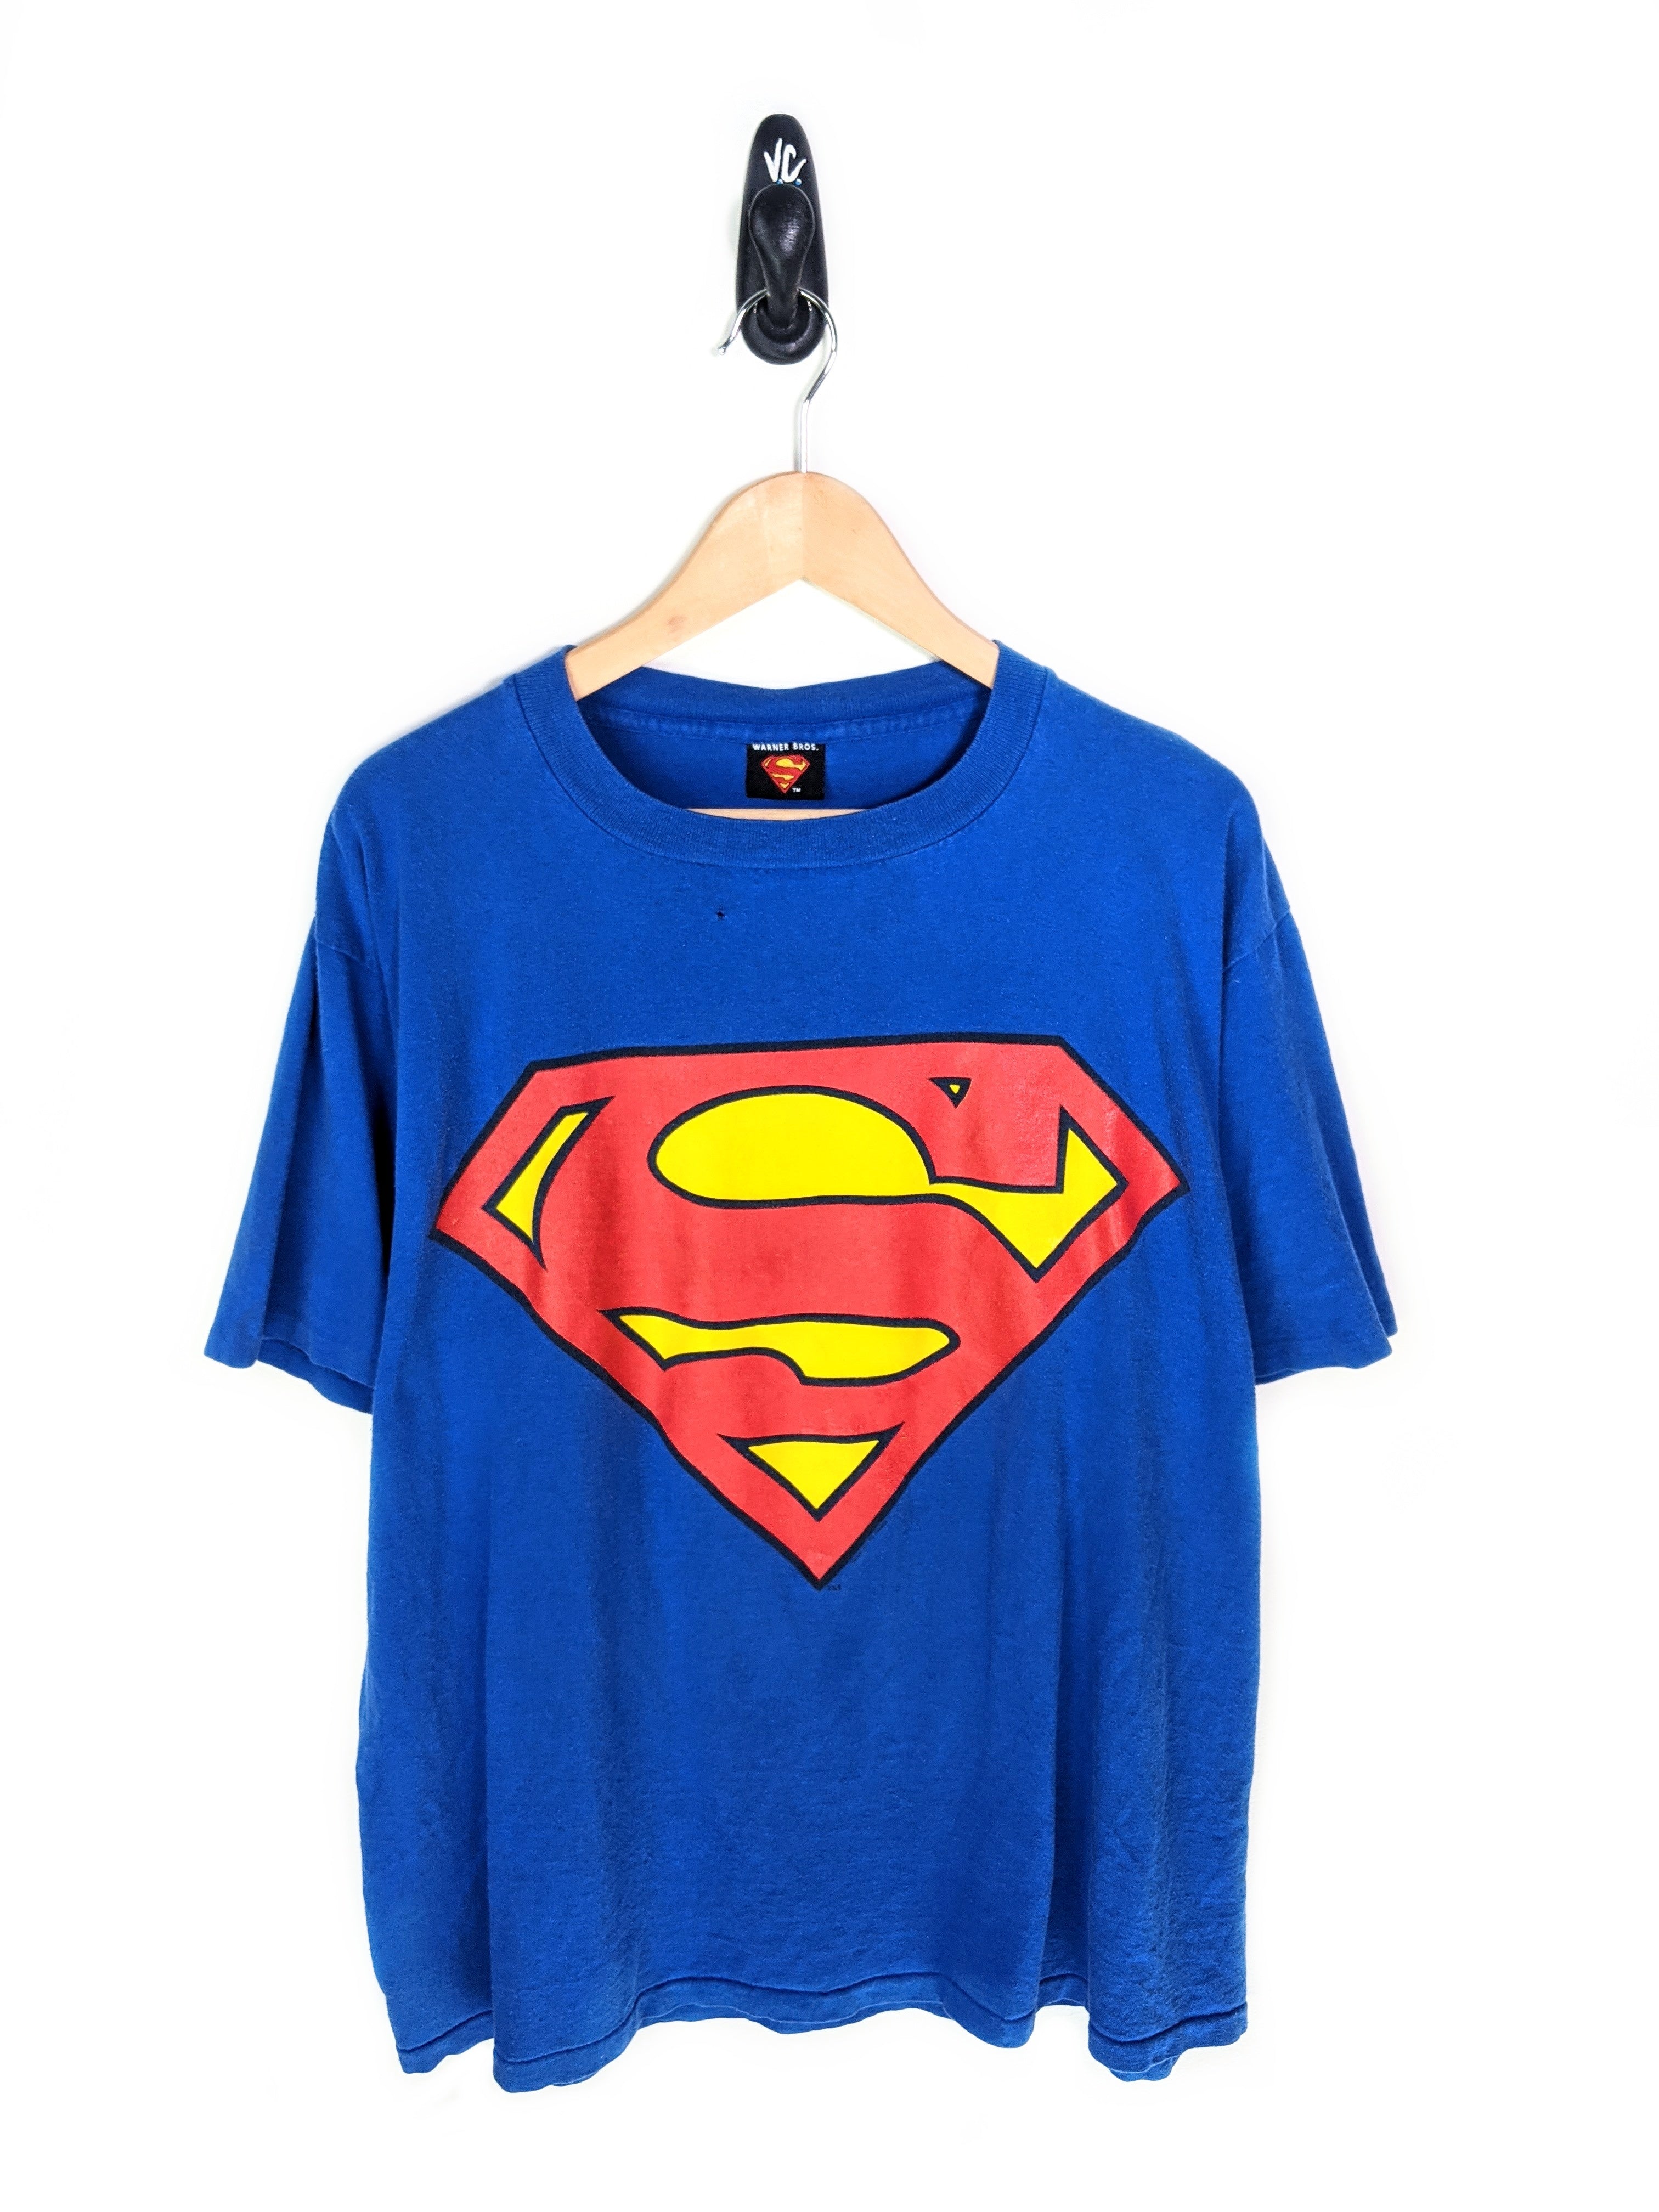 01 Superman Tee (XL)